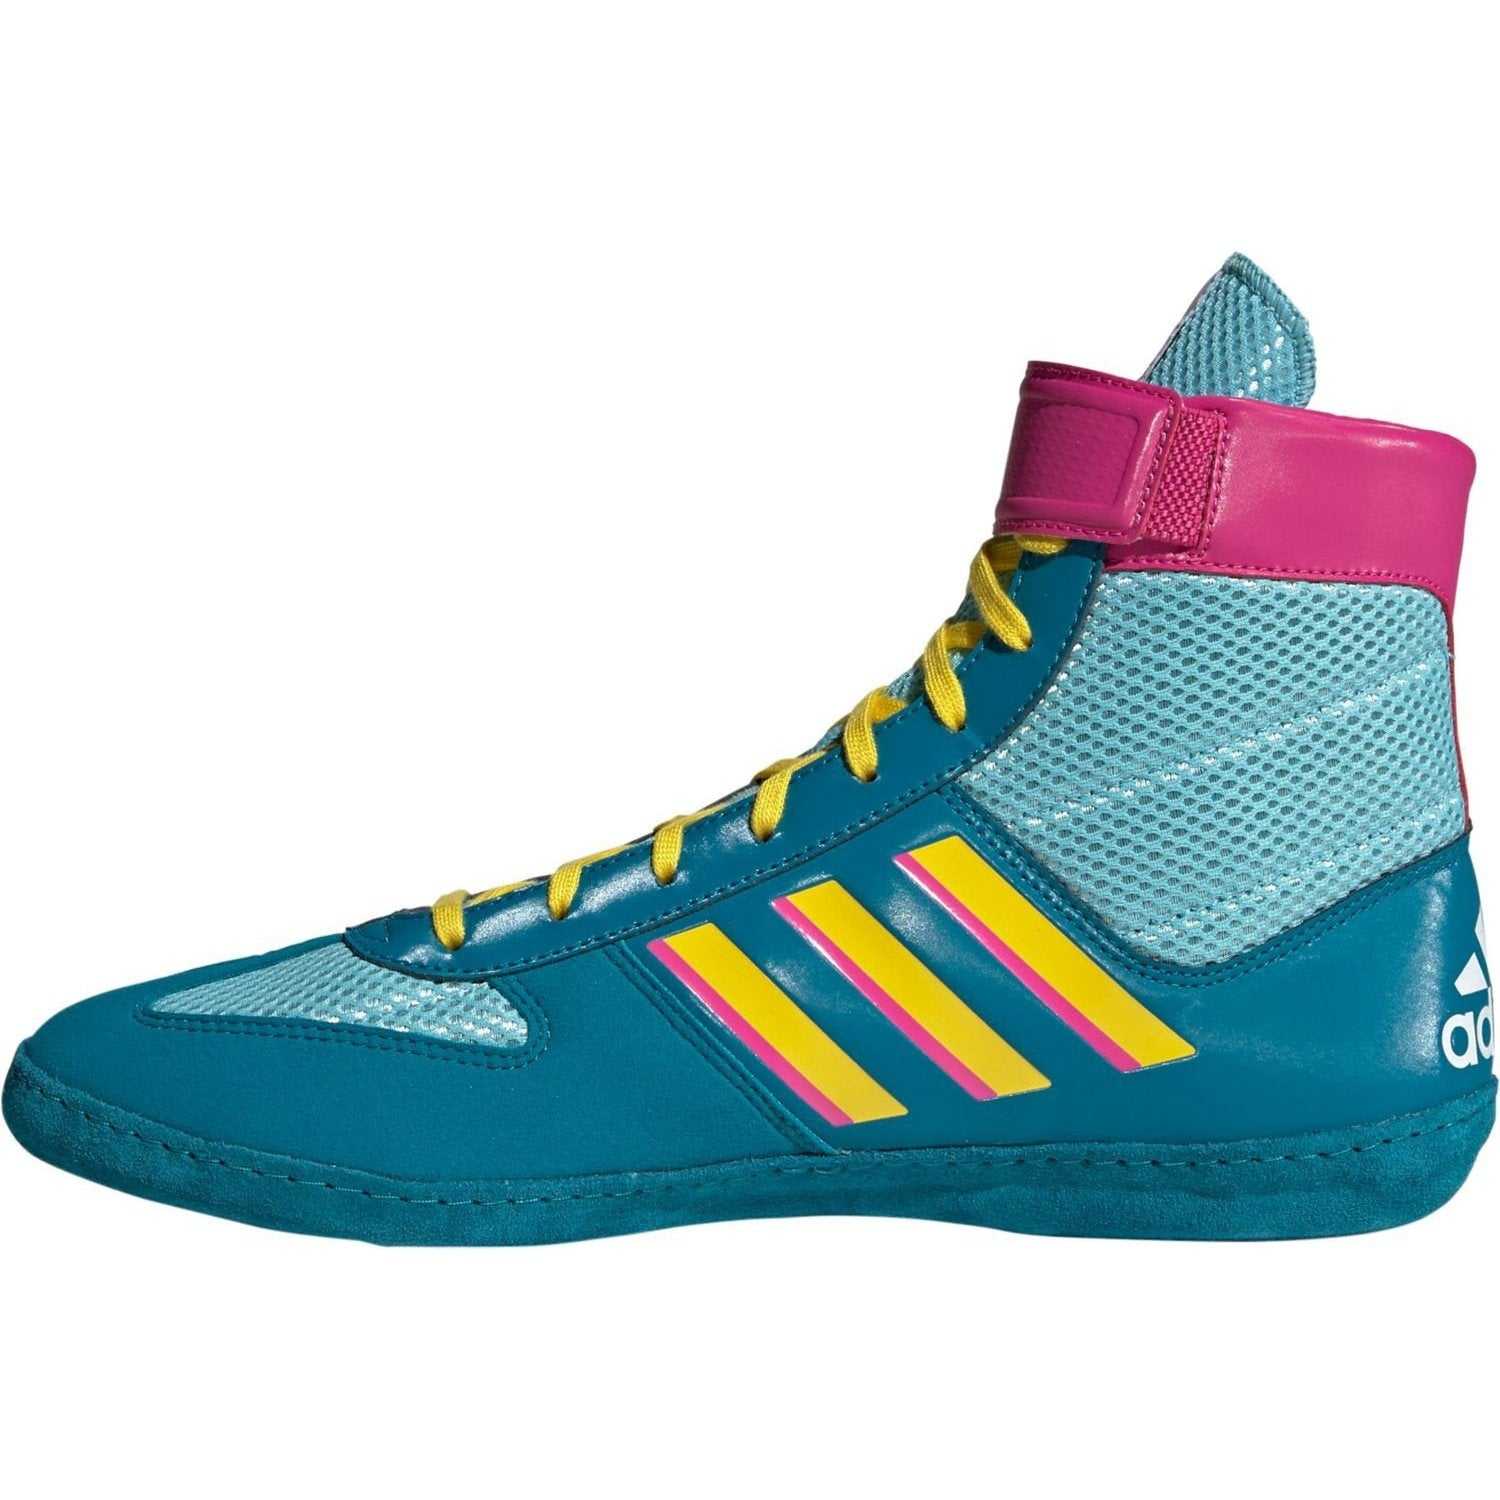 I tide Parametre lodret Adidas 224 Combat Speed 5 Wrestling Shoes - Aqua Yellow Teal